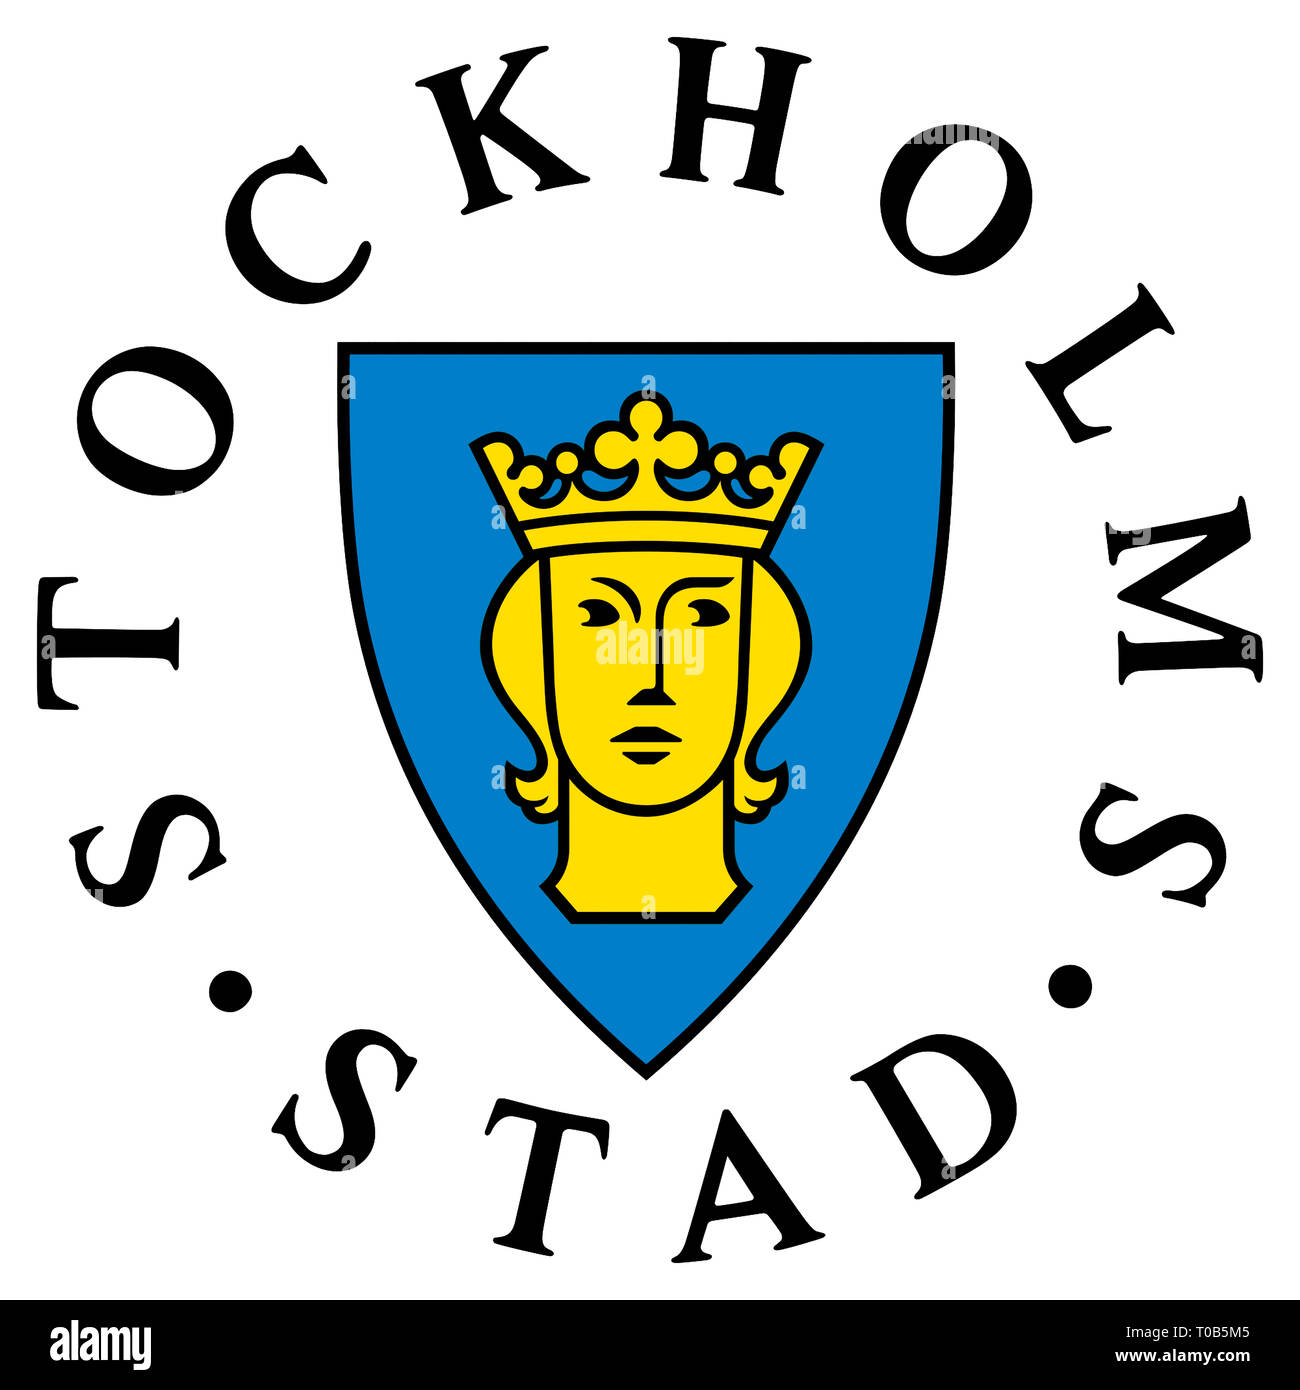 Stemma della capitale svedese city Stoccolma - Svezia. Foto Stock